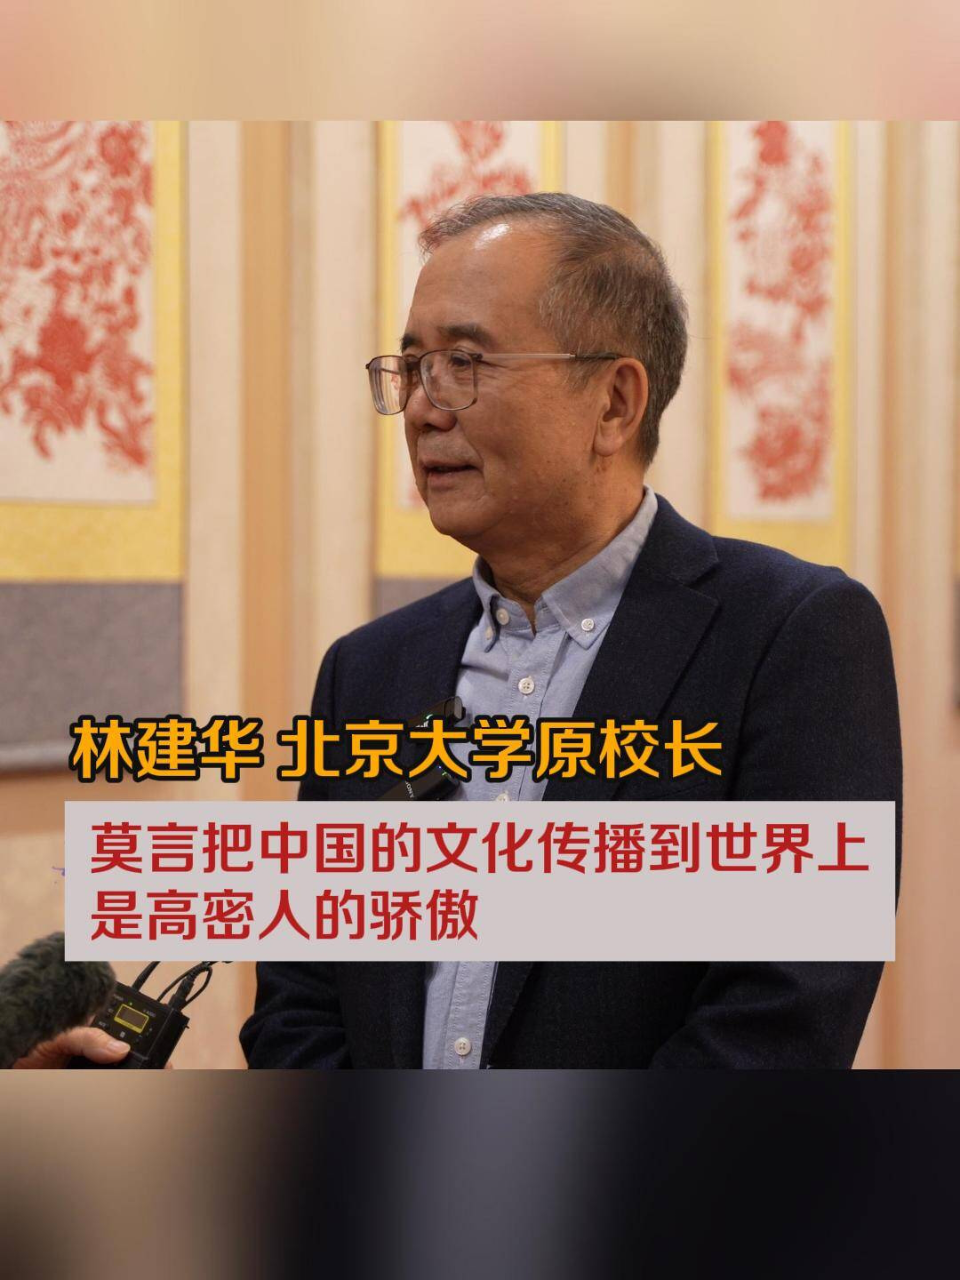 北京大学原校长林建华莫言把中国的文化传播到世界上是高密人的骄傲